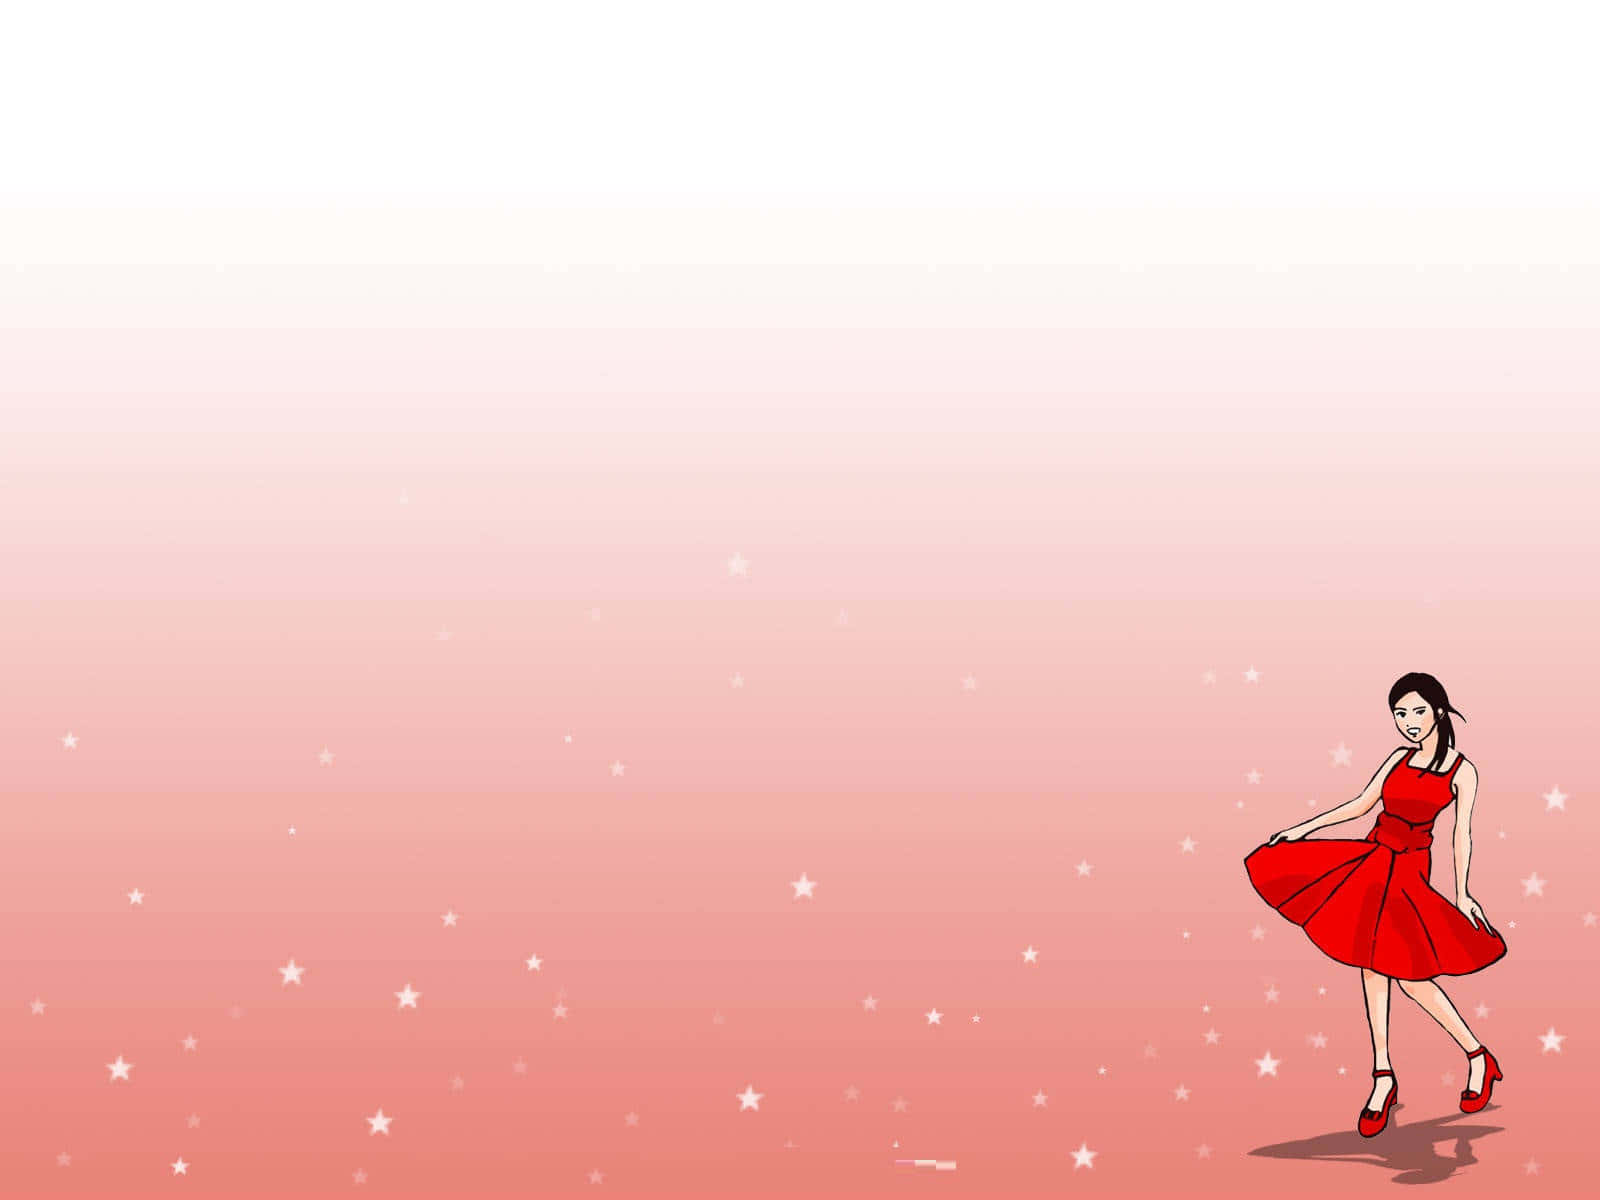 Unachica Con Un Vestido Rojo Está Bailando En Un Fondo Rosa. Fondo de pantalla